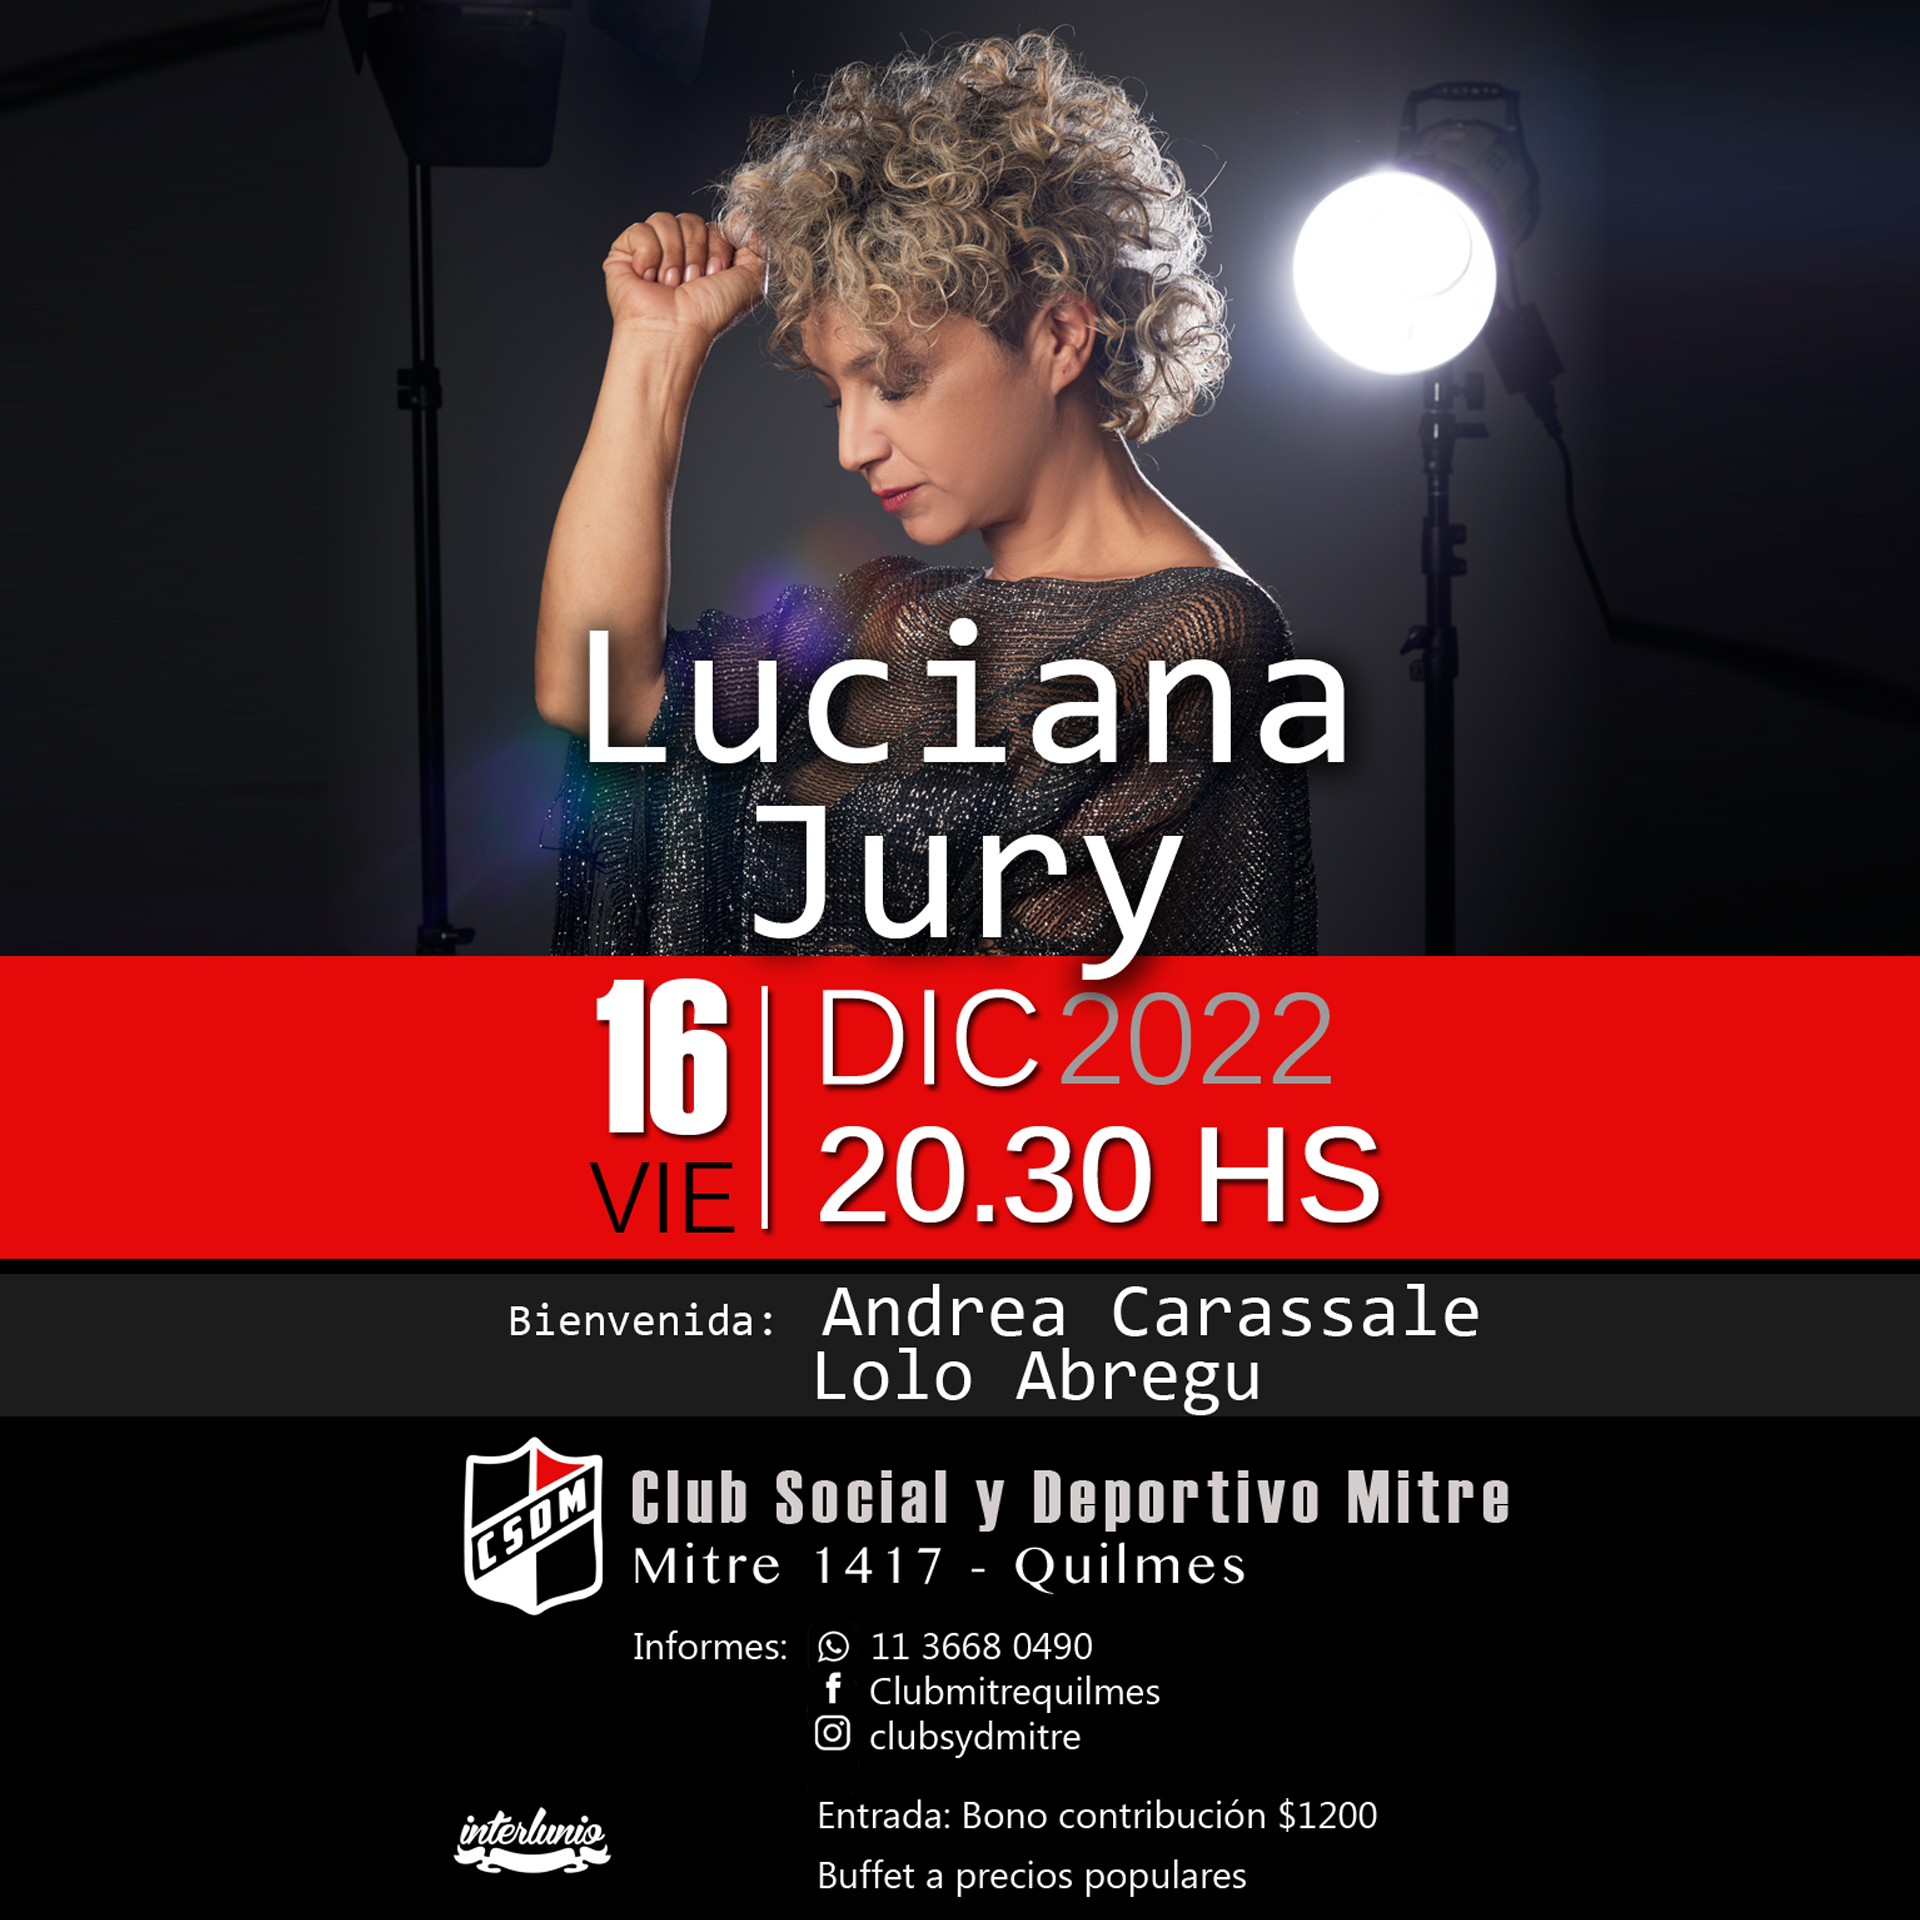 Luciana Jury 